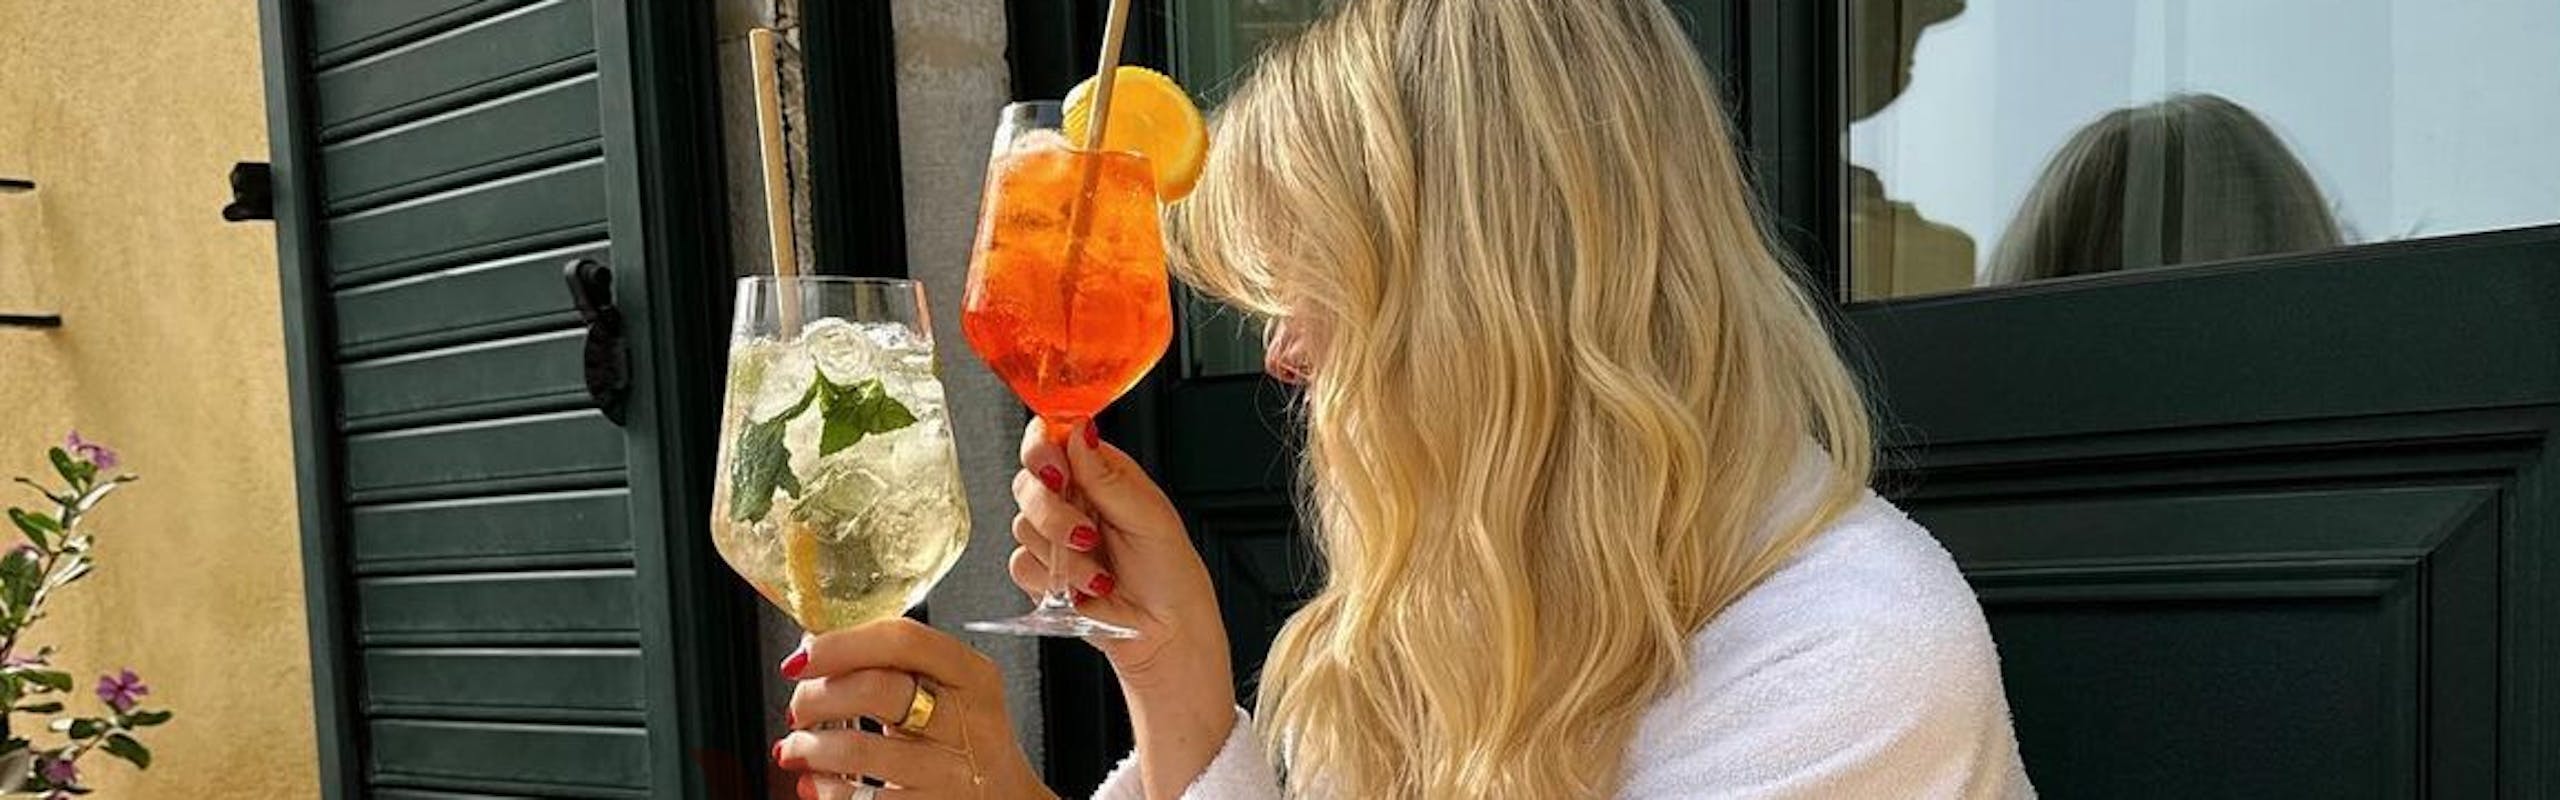 Photo courtesy of Instagram/ @aquired.style. hugo spritz aperol spritz summer drink